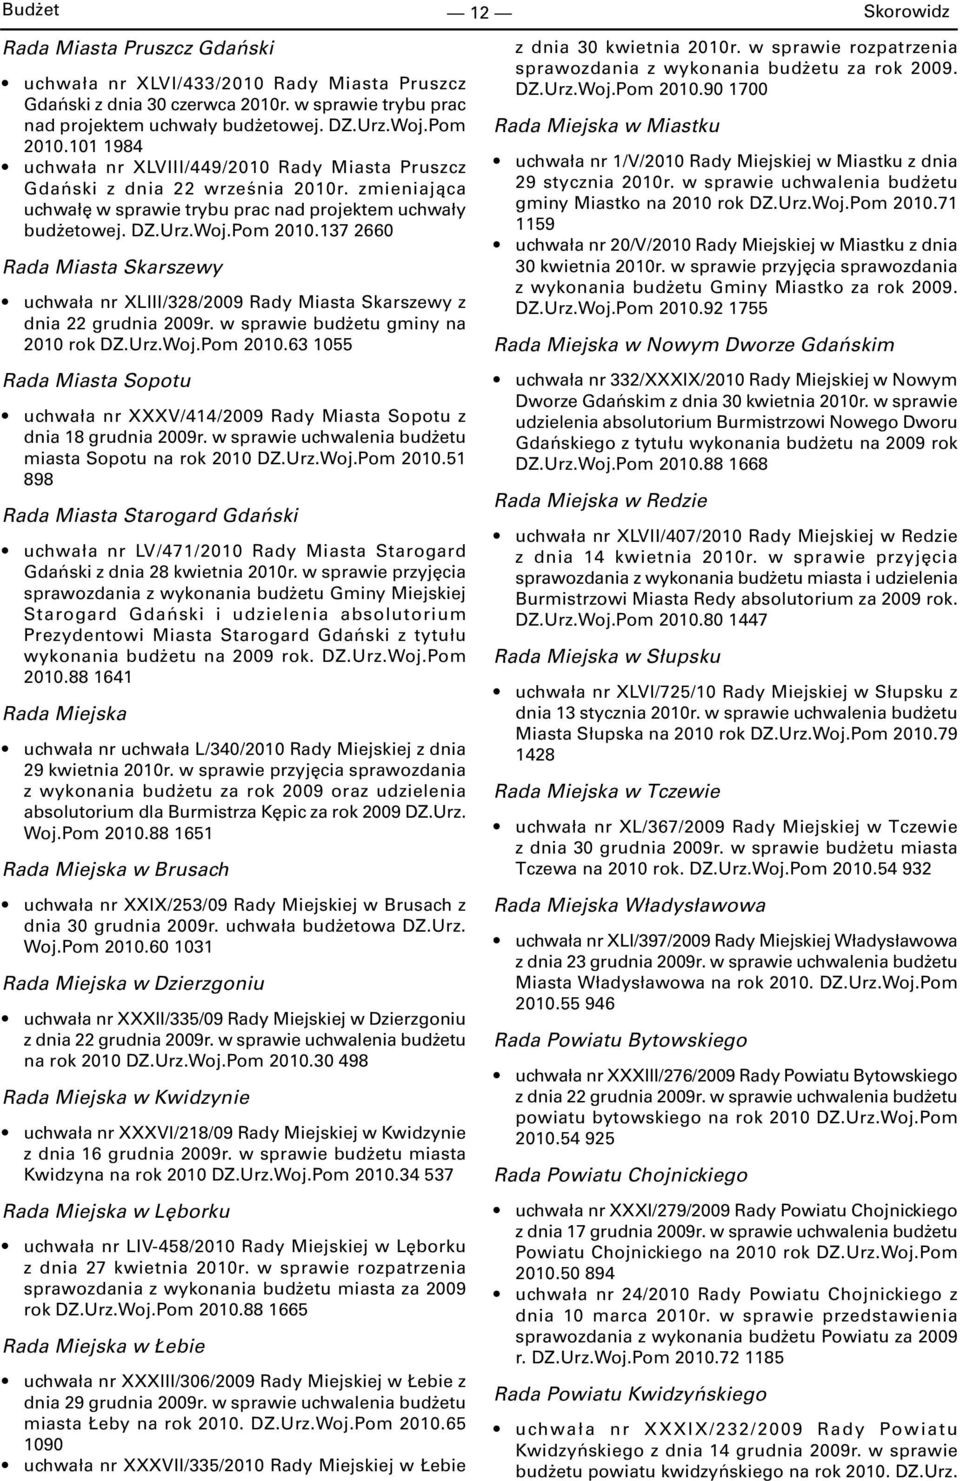 137 2660 Rada Miasta Skarszewy uchwała nr XLIII/328/2009 Rady Miasta Skarszewy z dnia 22 grudnia 2009r. w sprawie budżetu gminy na 2010 rok DZ.Urz.Woj.Pom 2010.